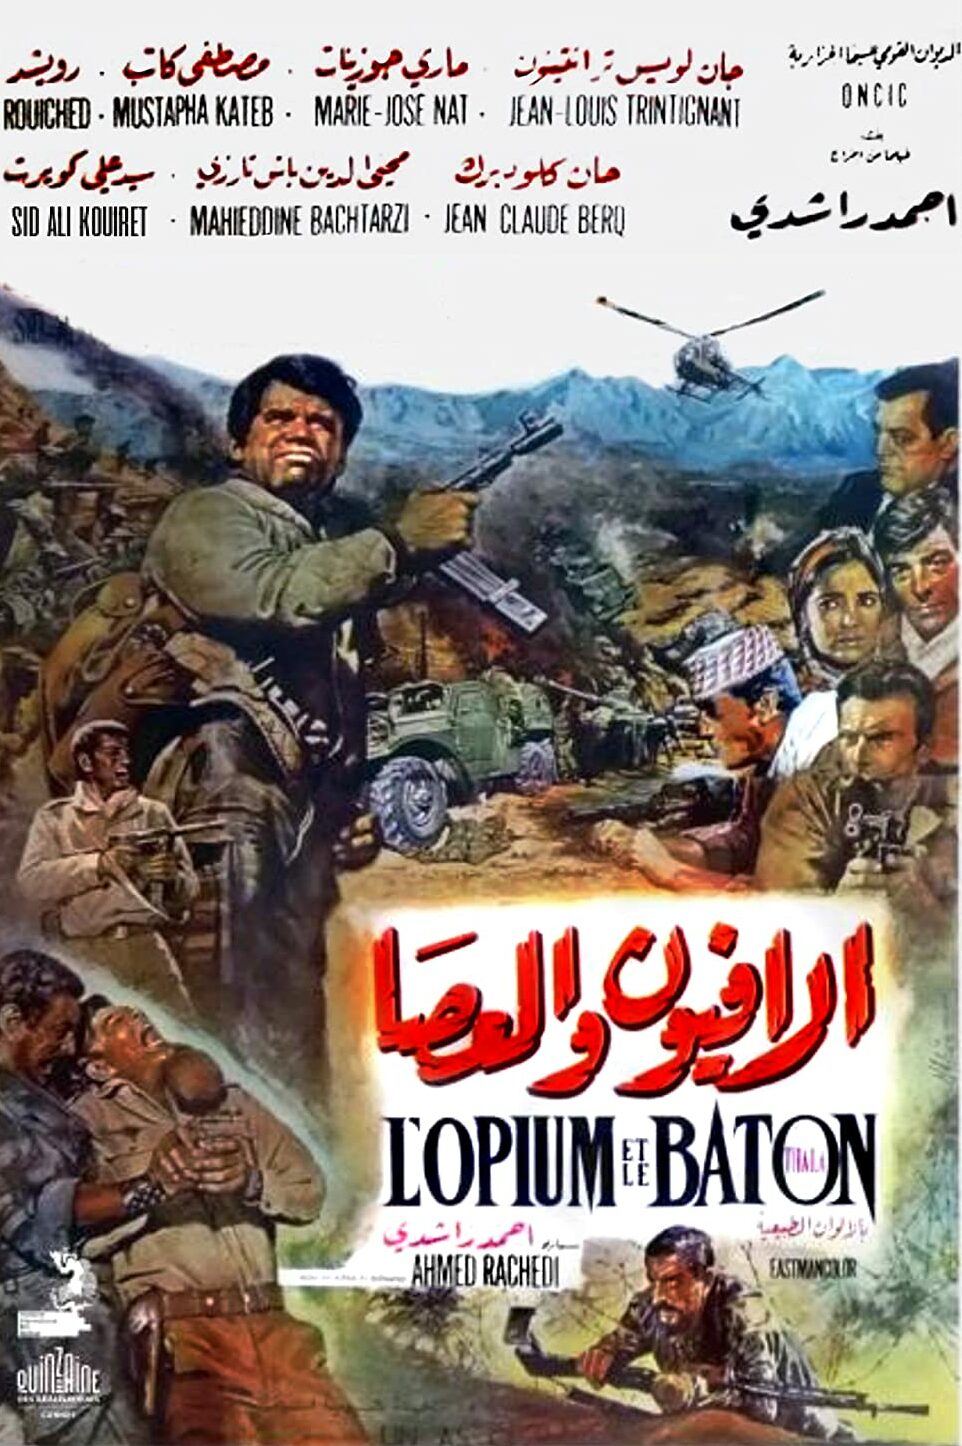 Affiche du film L’Opium et le Bâton d'Ahmed Rachedi (1971).